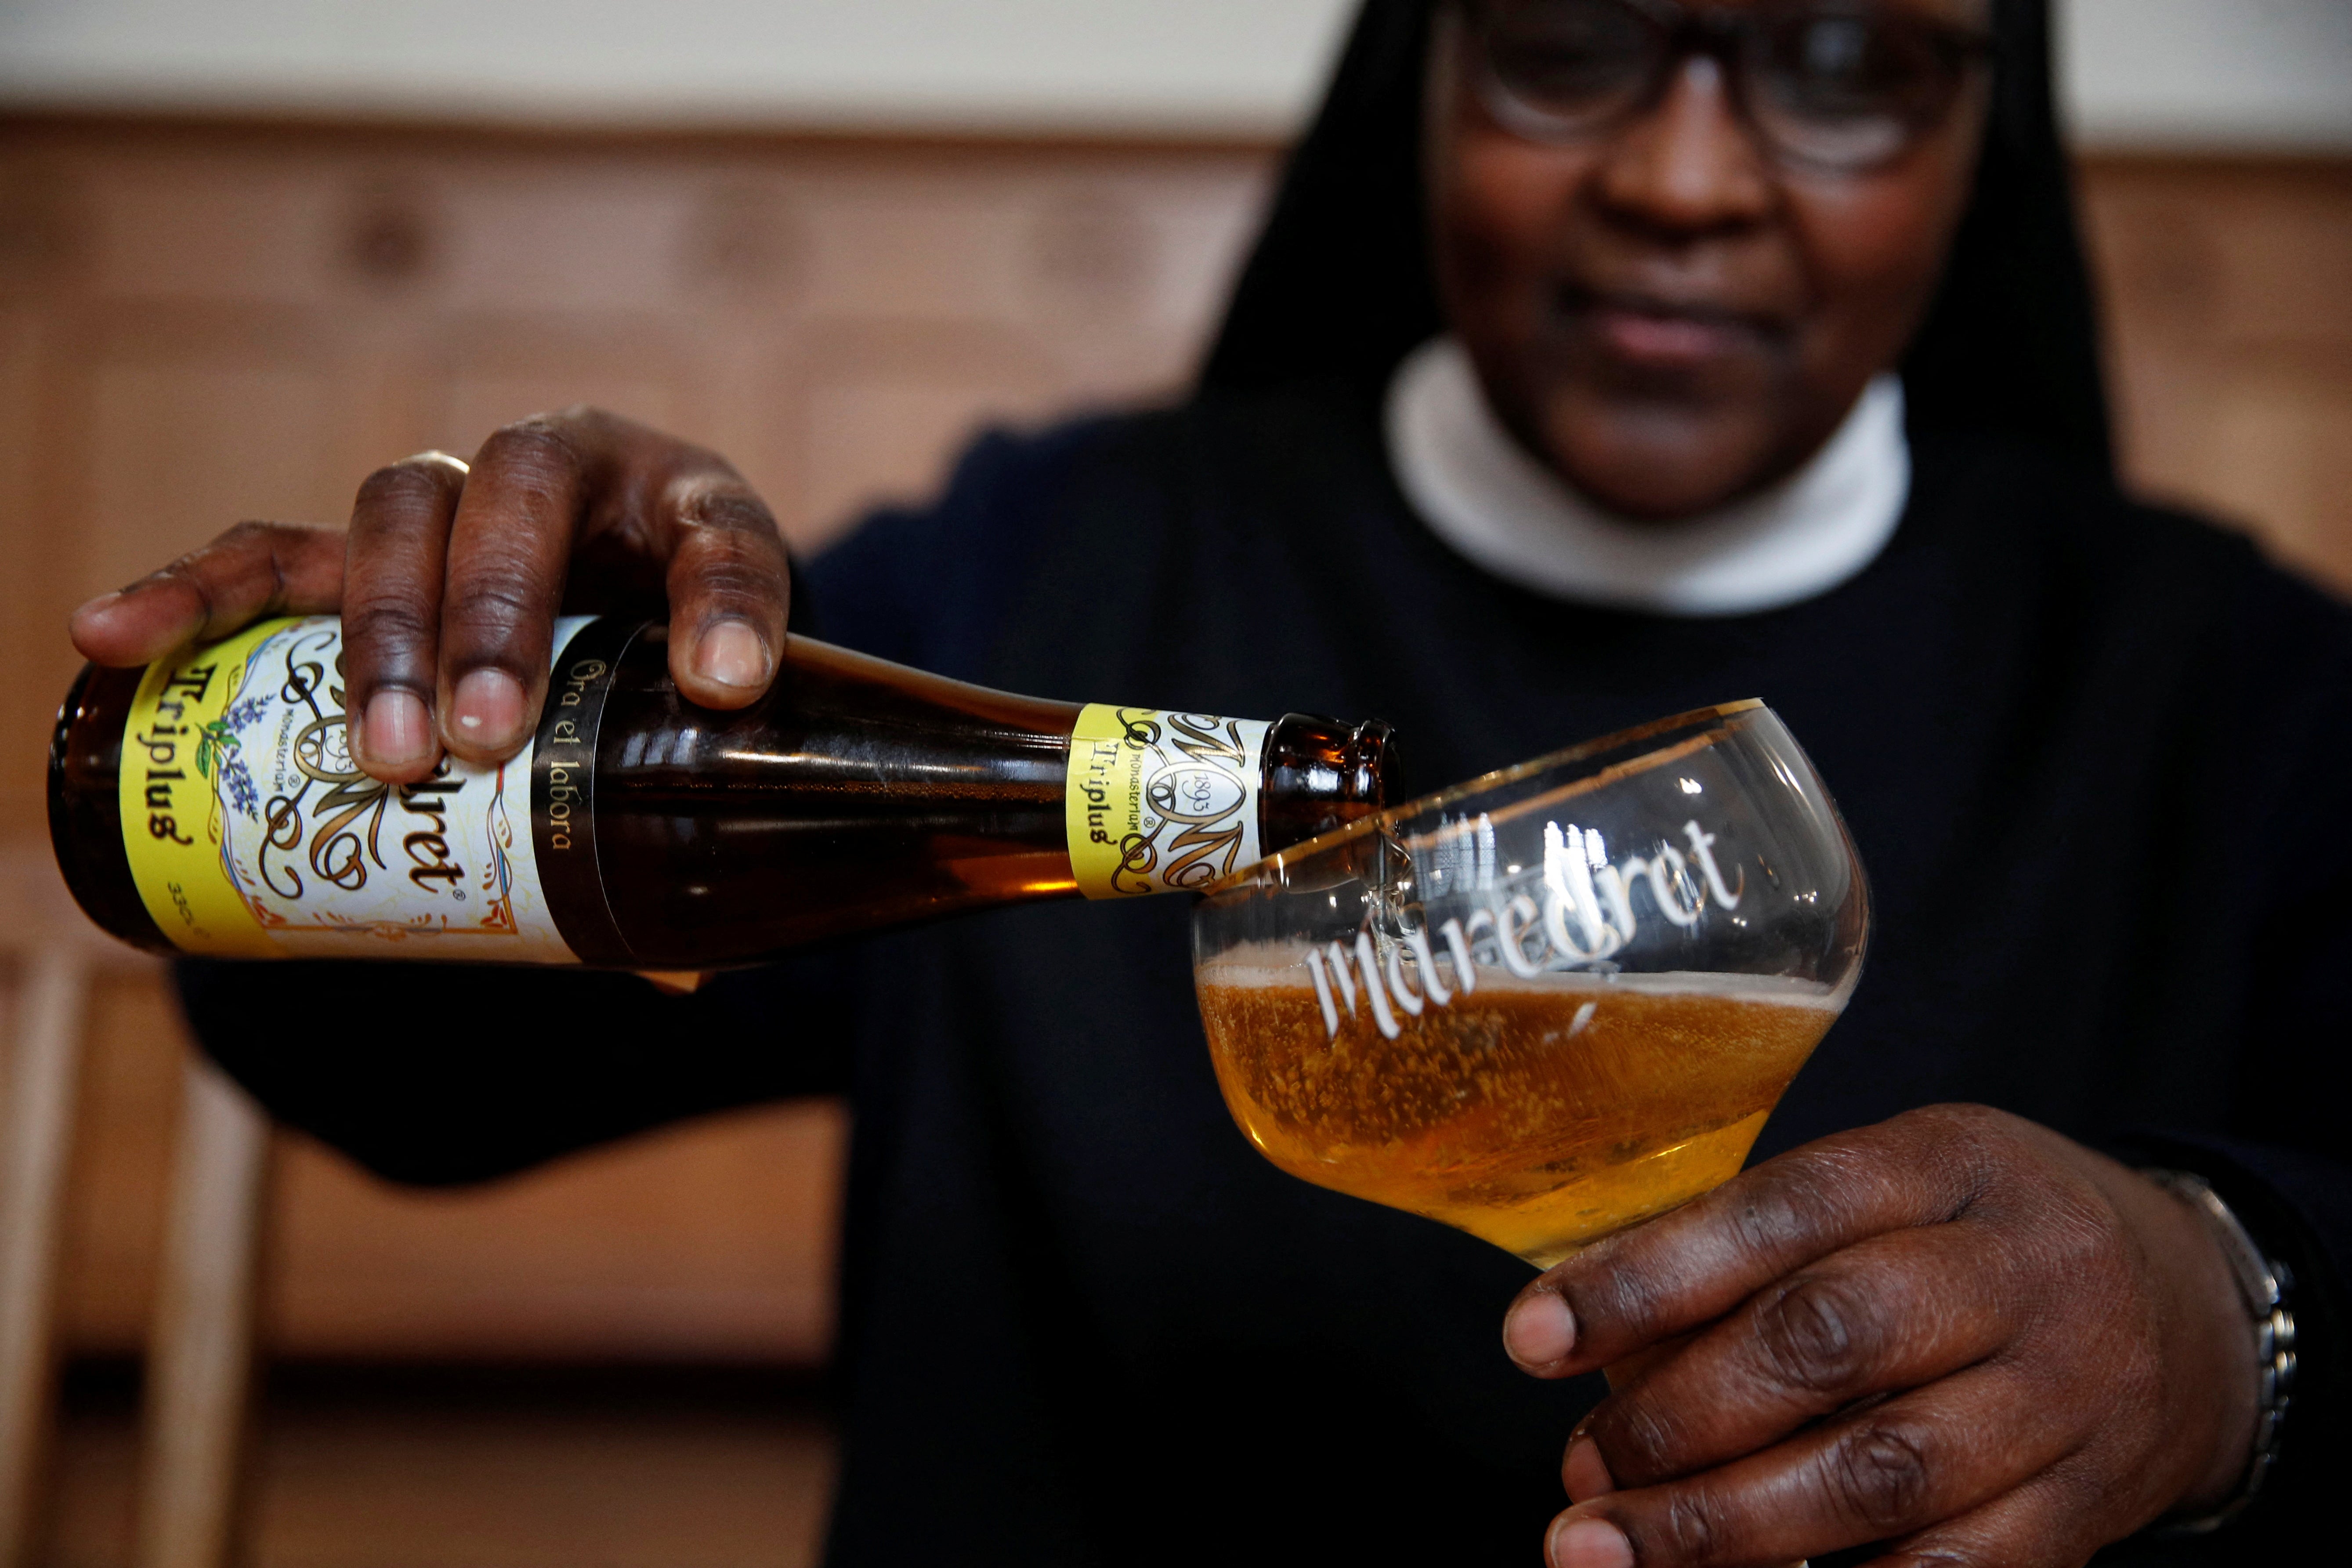 Benedictine Sister Gertrude drinks a ‘Maredret’ beer